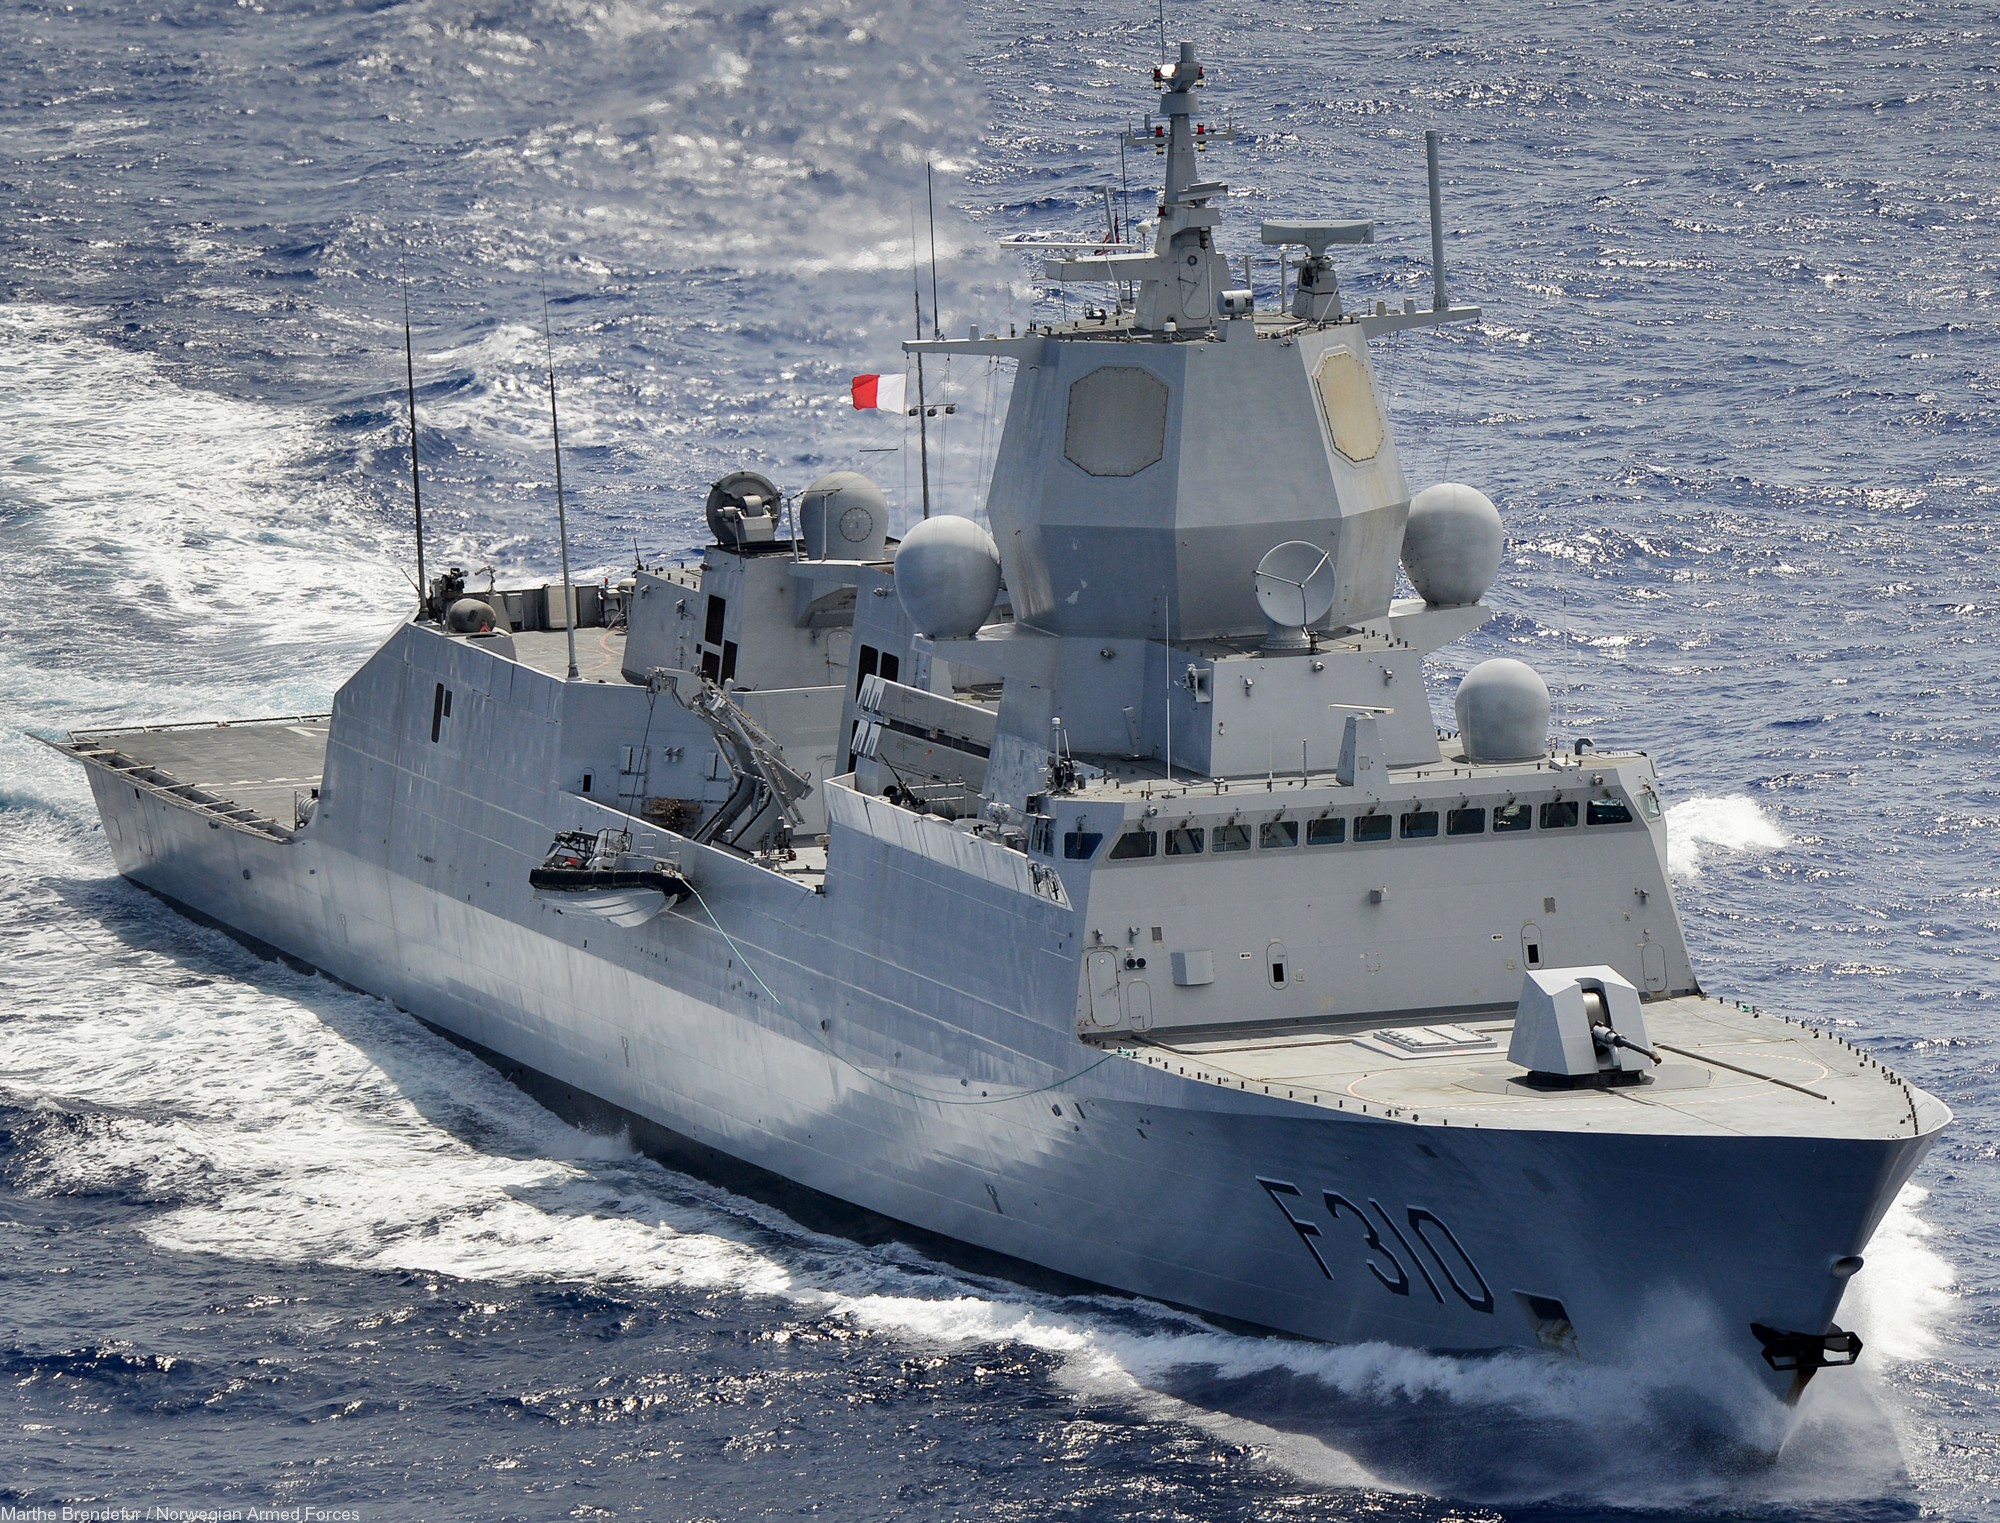 f-310 fridtjof nansen hnoms knm aegis frigate royal norwegian navy sjoforsvaret 06a